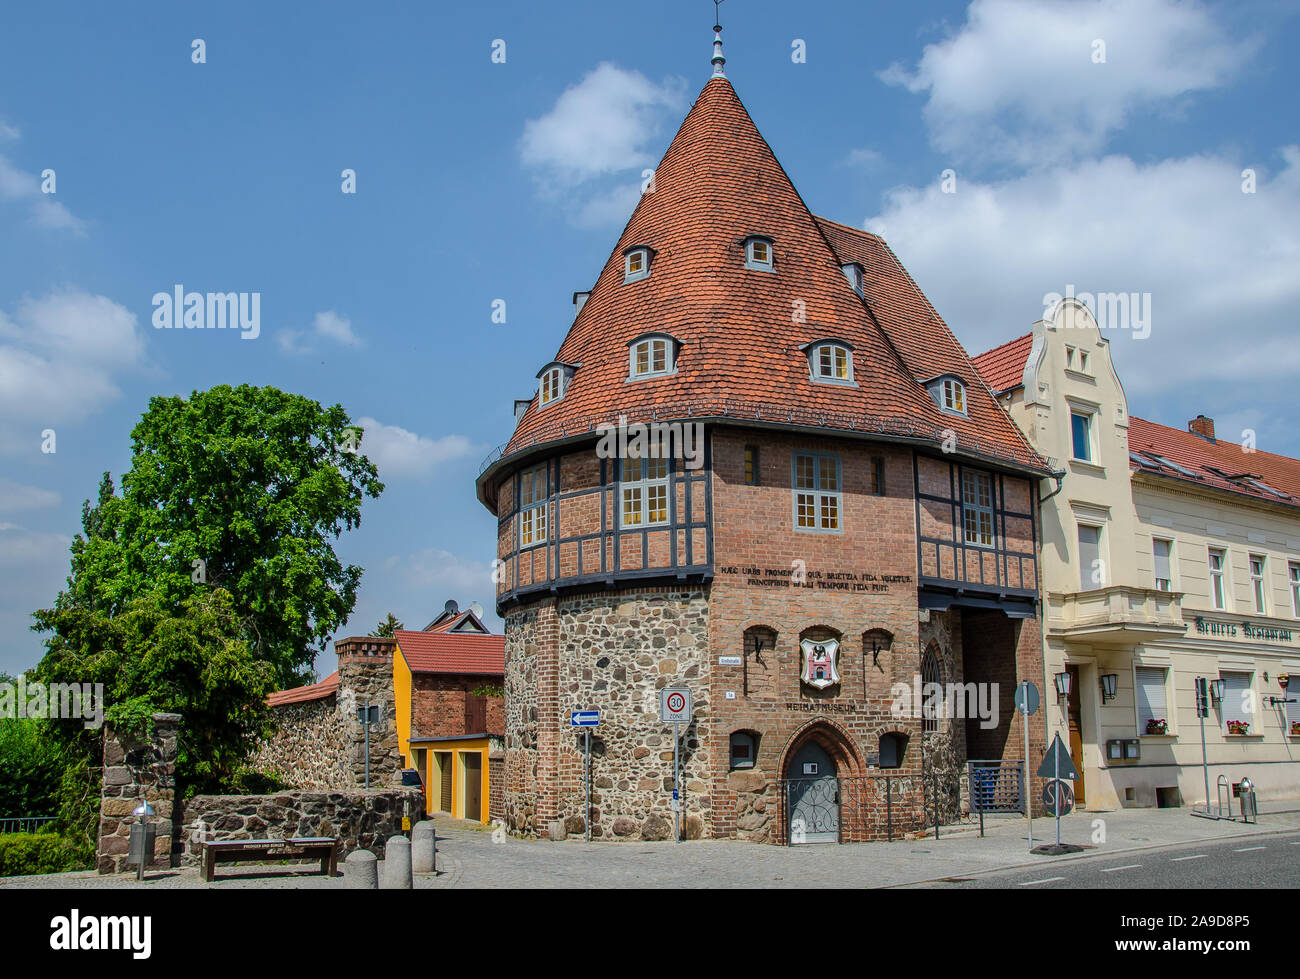 La città idilliaca di Treuenbrietzen, con il suo centro storico medievale, è situato al margine settentrionale della terra di origine glaciale ridge chiamato "Niederer Fläming Foto Stock